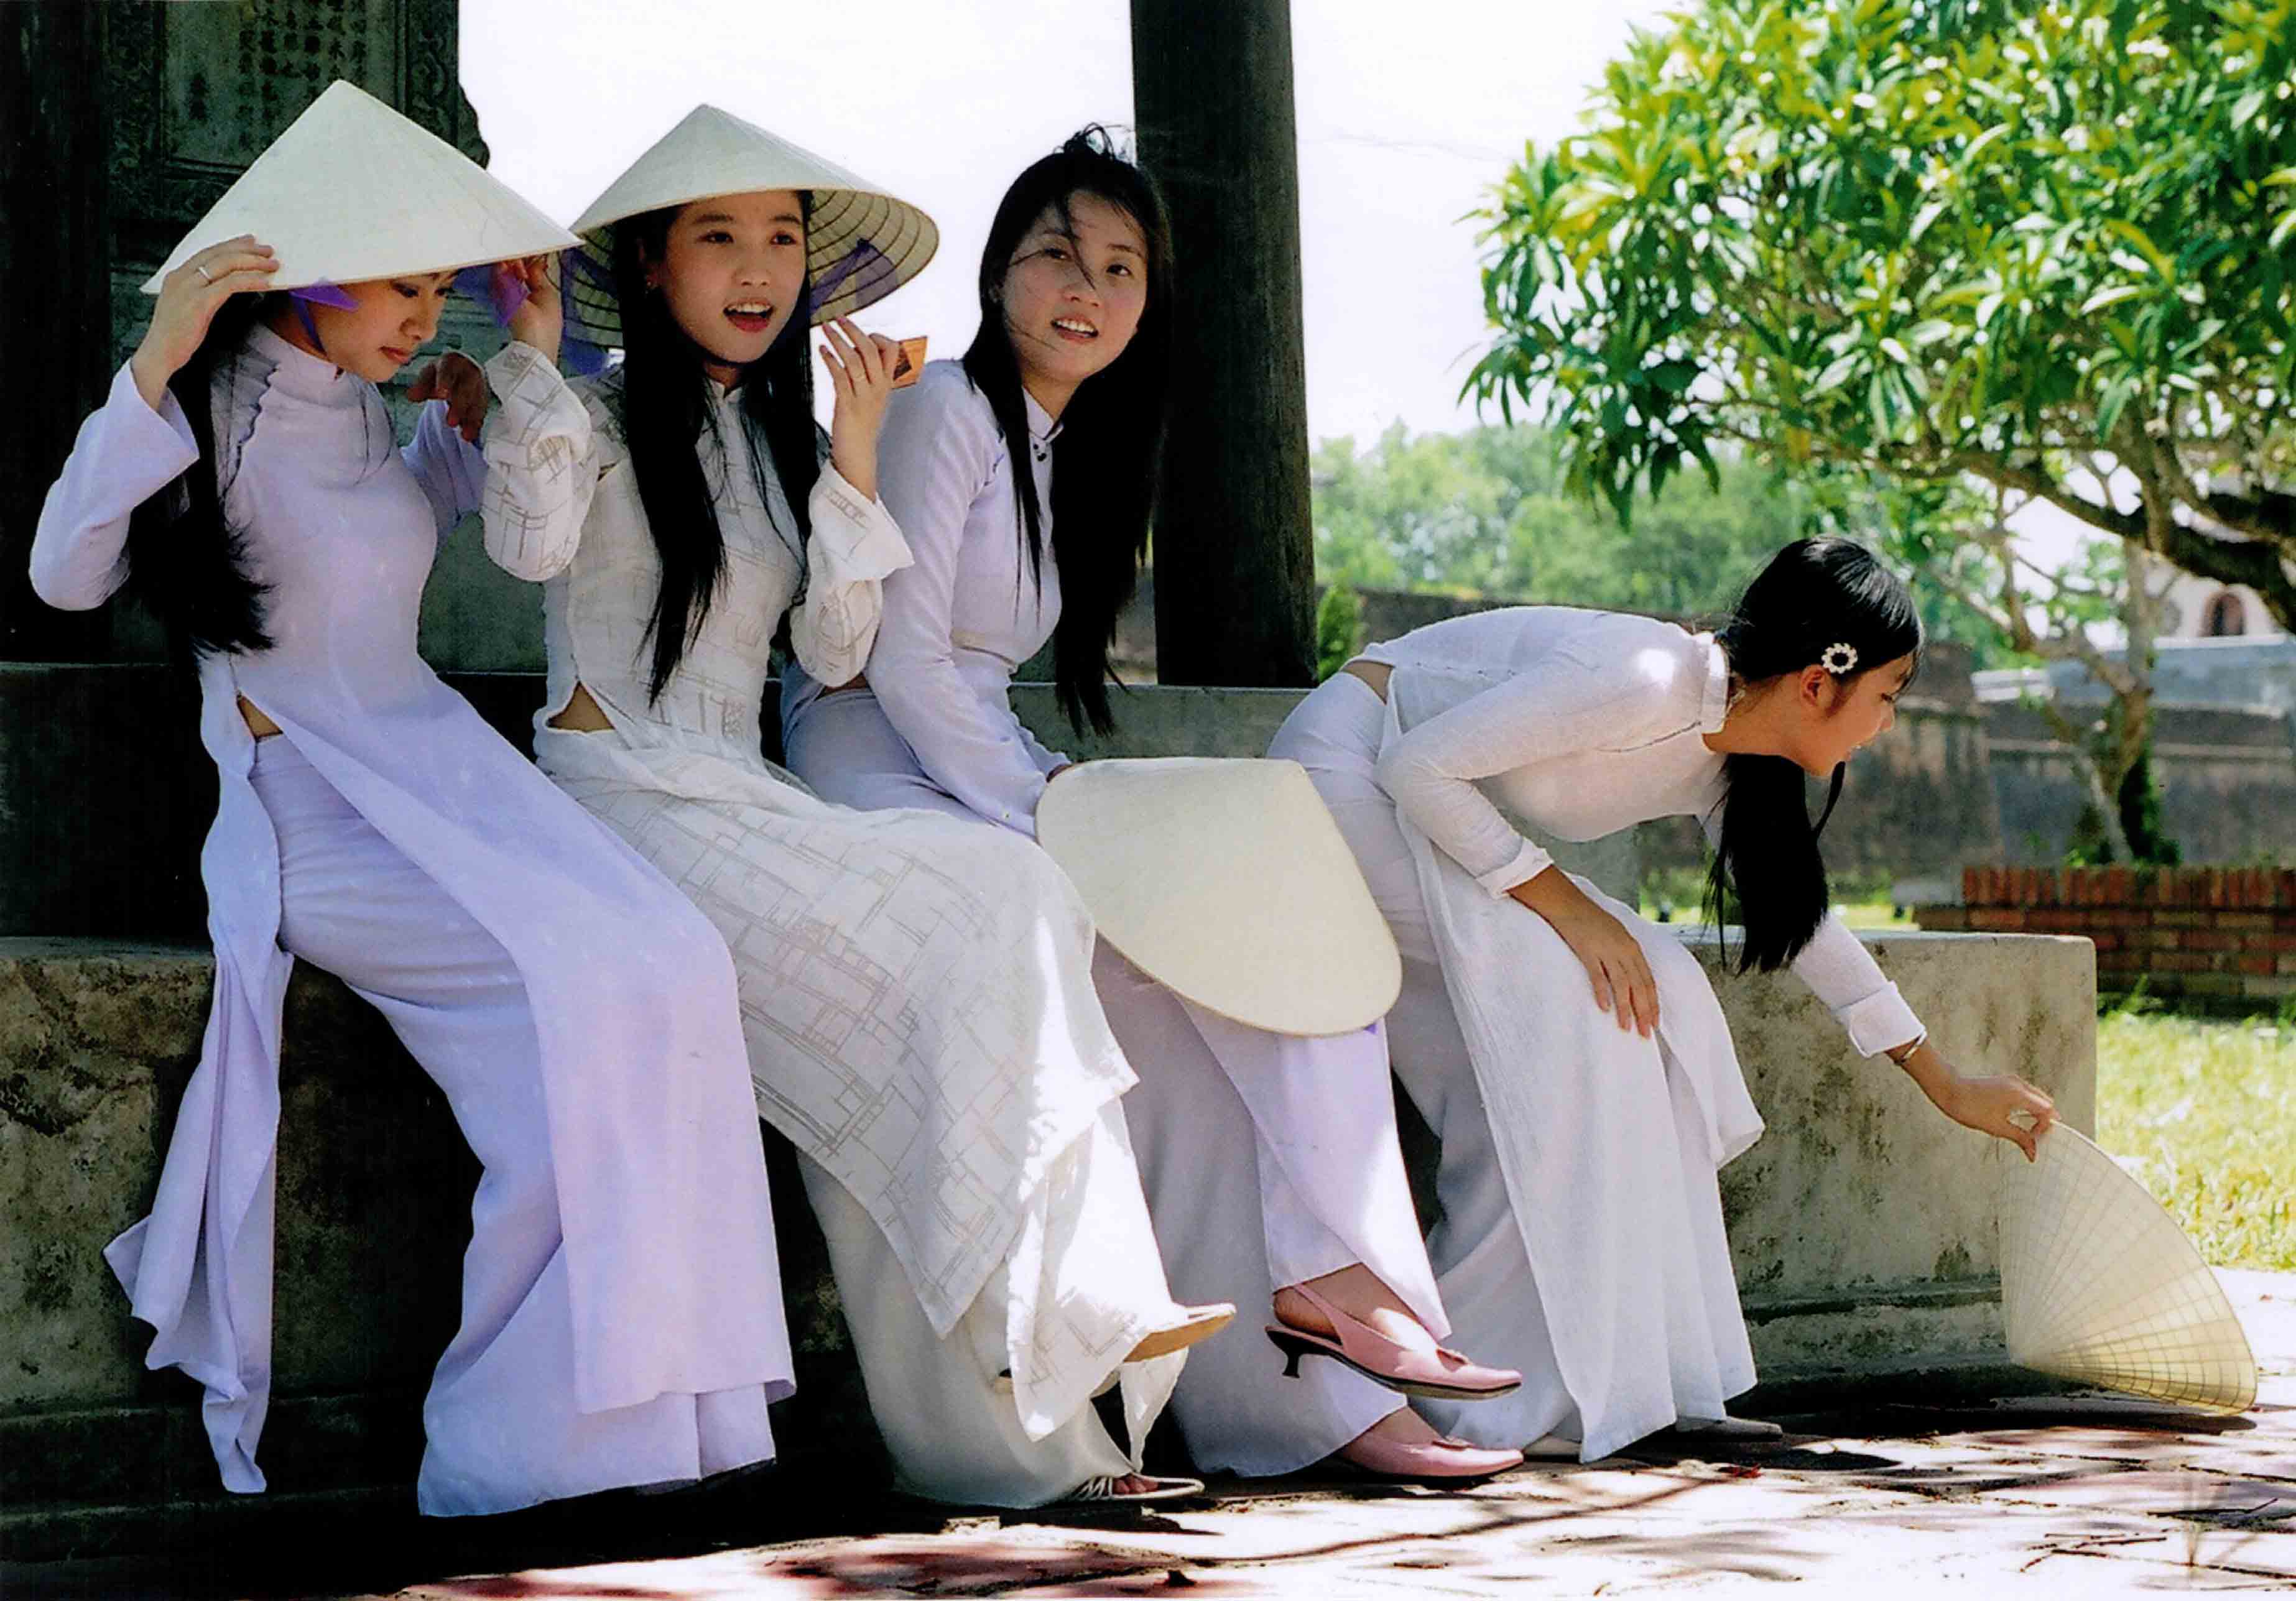 传统服装的越南女孩 图库摄影片. 图片 包括有 越南, 重要, 节假日, 服装, 庆祝, 女孩, 纵向 - 136889632